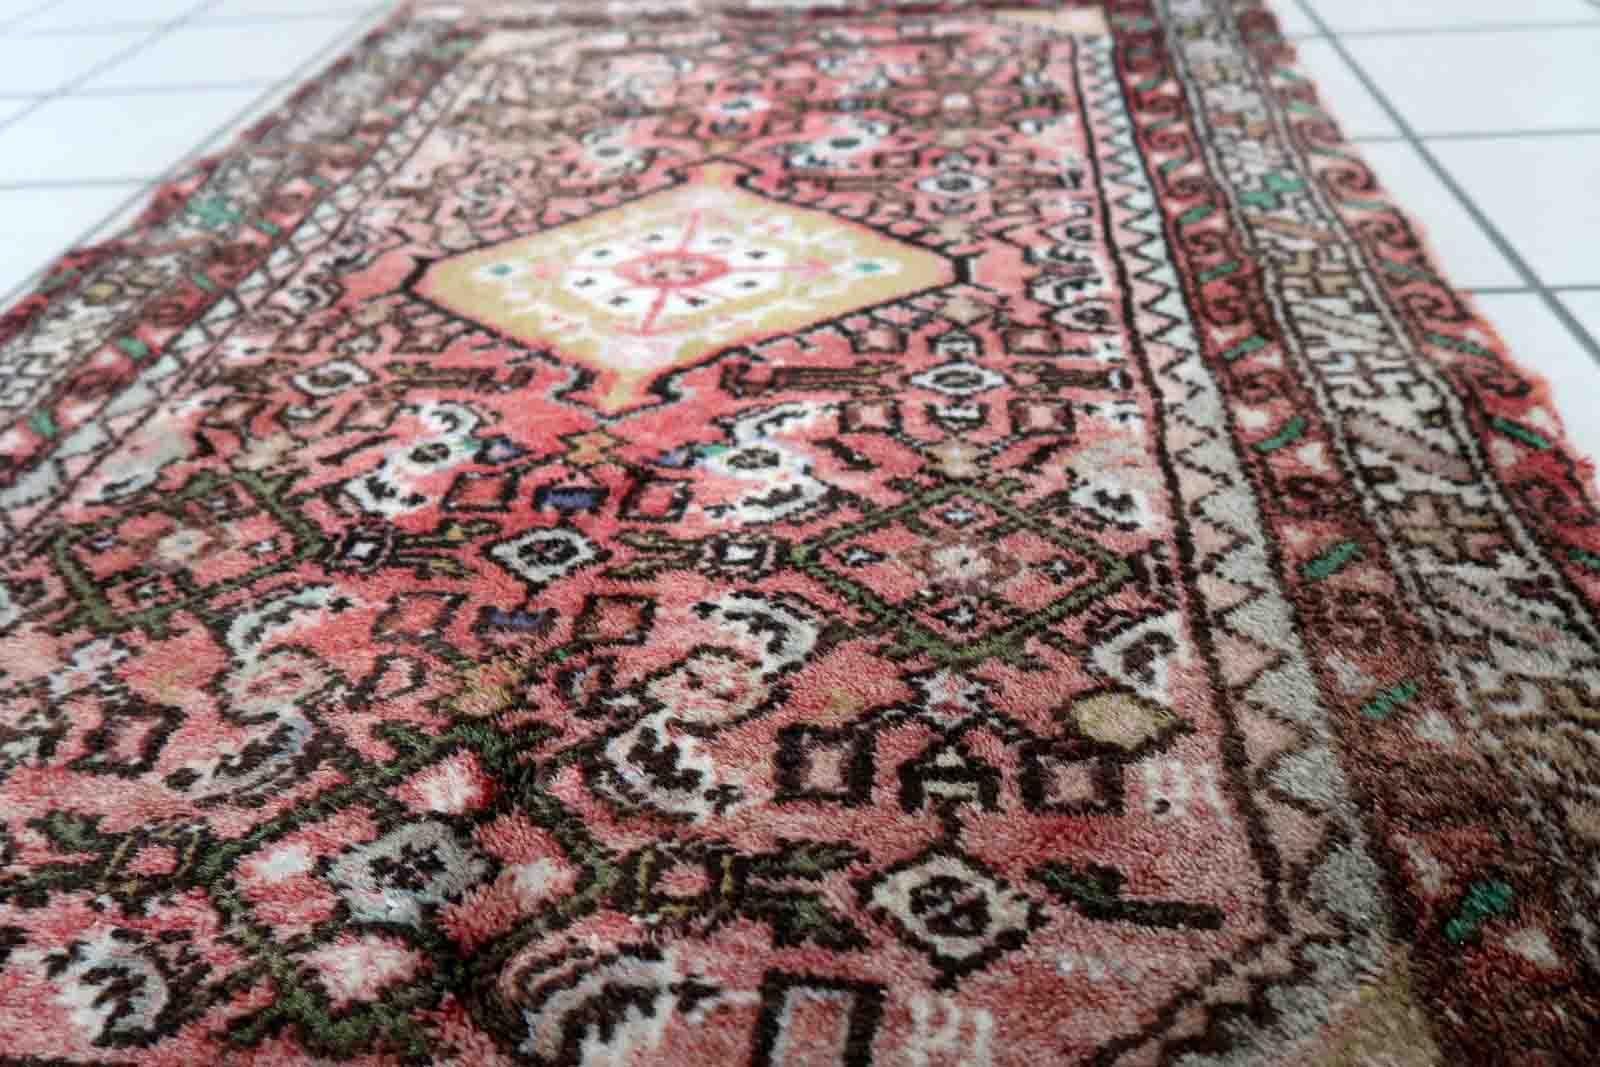 Handgefertigter Vintage-Teppich aus Hamadan mit klassischem Medaillonmuster. Der Teppich wurde Anfang des 20. Jahrhunderts hergestellt, er ist in gutem Originalzustand.

-zustand: original gut,

-etwa: 1970er Jahre,

-größe: 2,3' x 3,7' (73cm